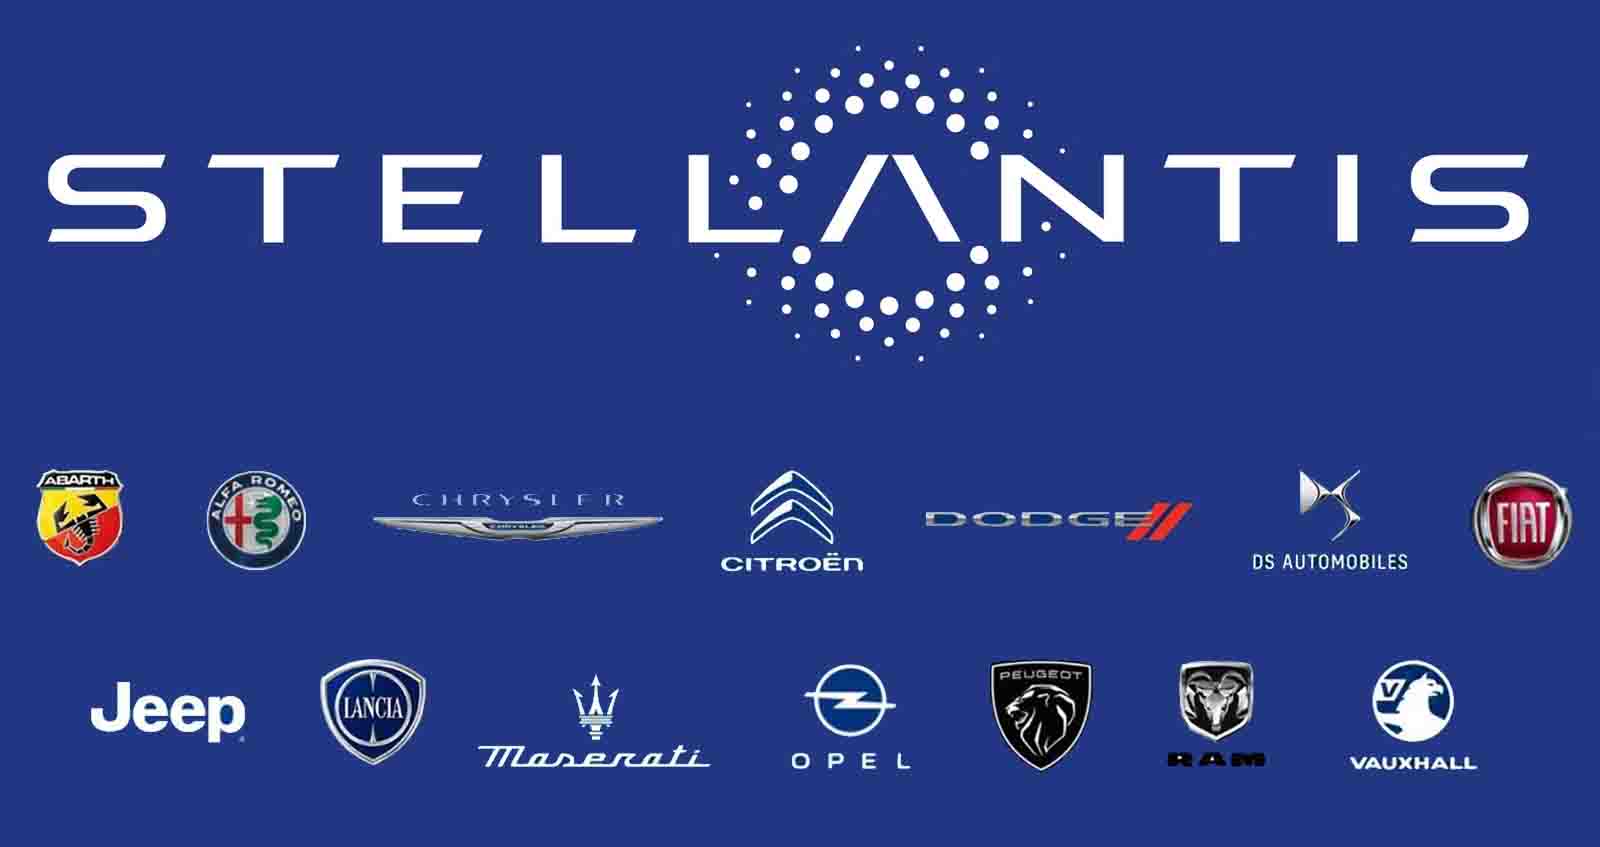 14 แบรนด์ภายใต้ Stellantis ผลักดันรถยนต์ไฟฟ้า 100% ในยุโรป ภายในปี 2026